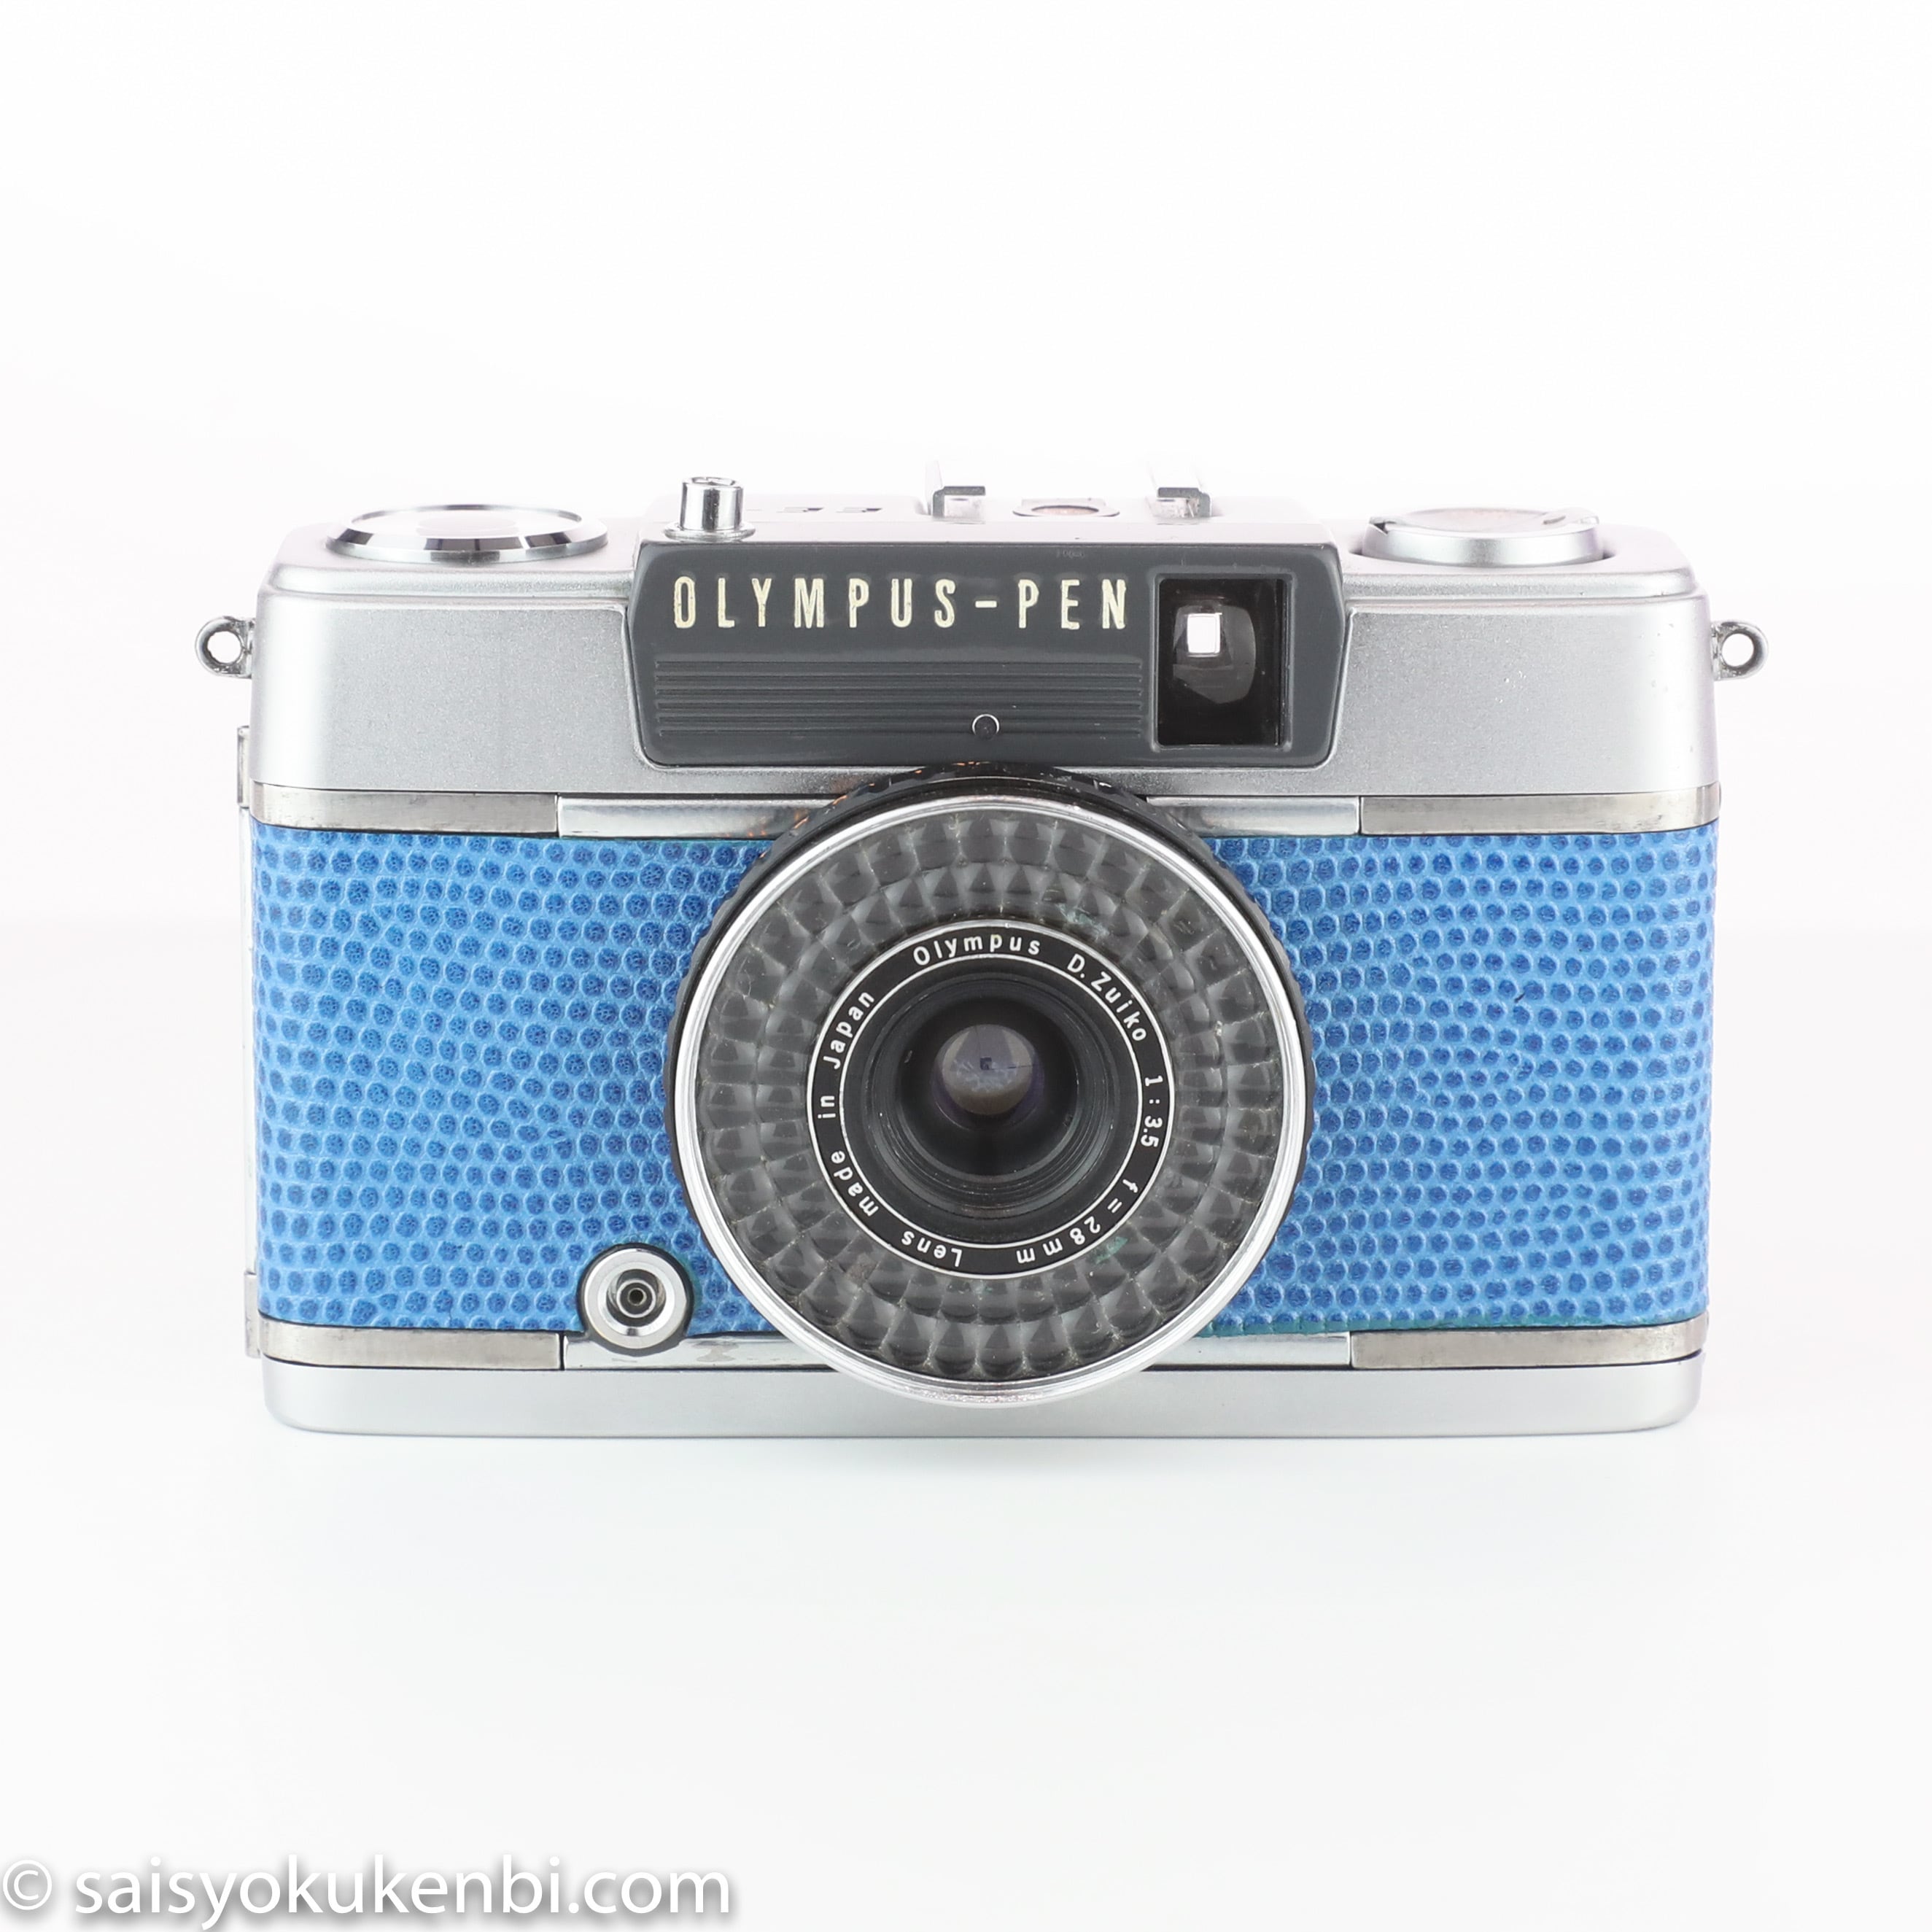 フィルム1本付き&現像代込み！F3.5 28mm OLYMPUS PEN EE-2 オリンパスペン [ライトブルー] ハーフカメラ コンパクトカメラ  中古フィルムカメラ